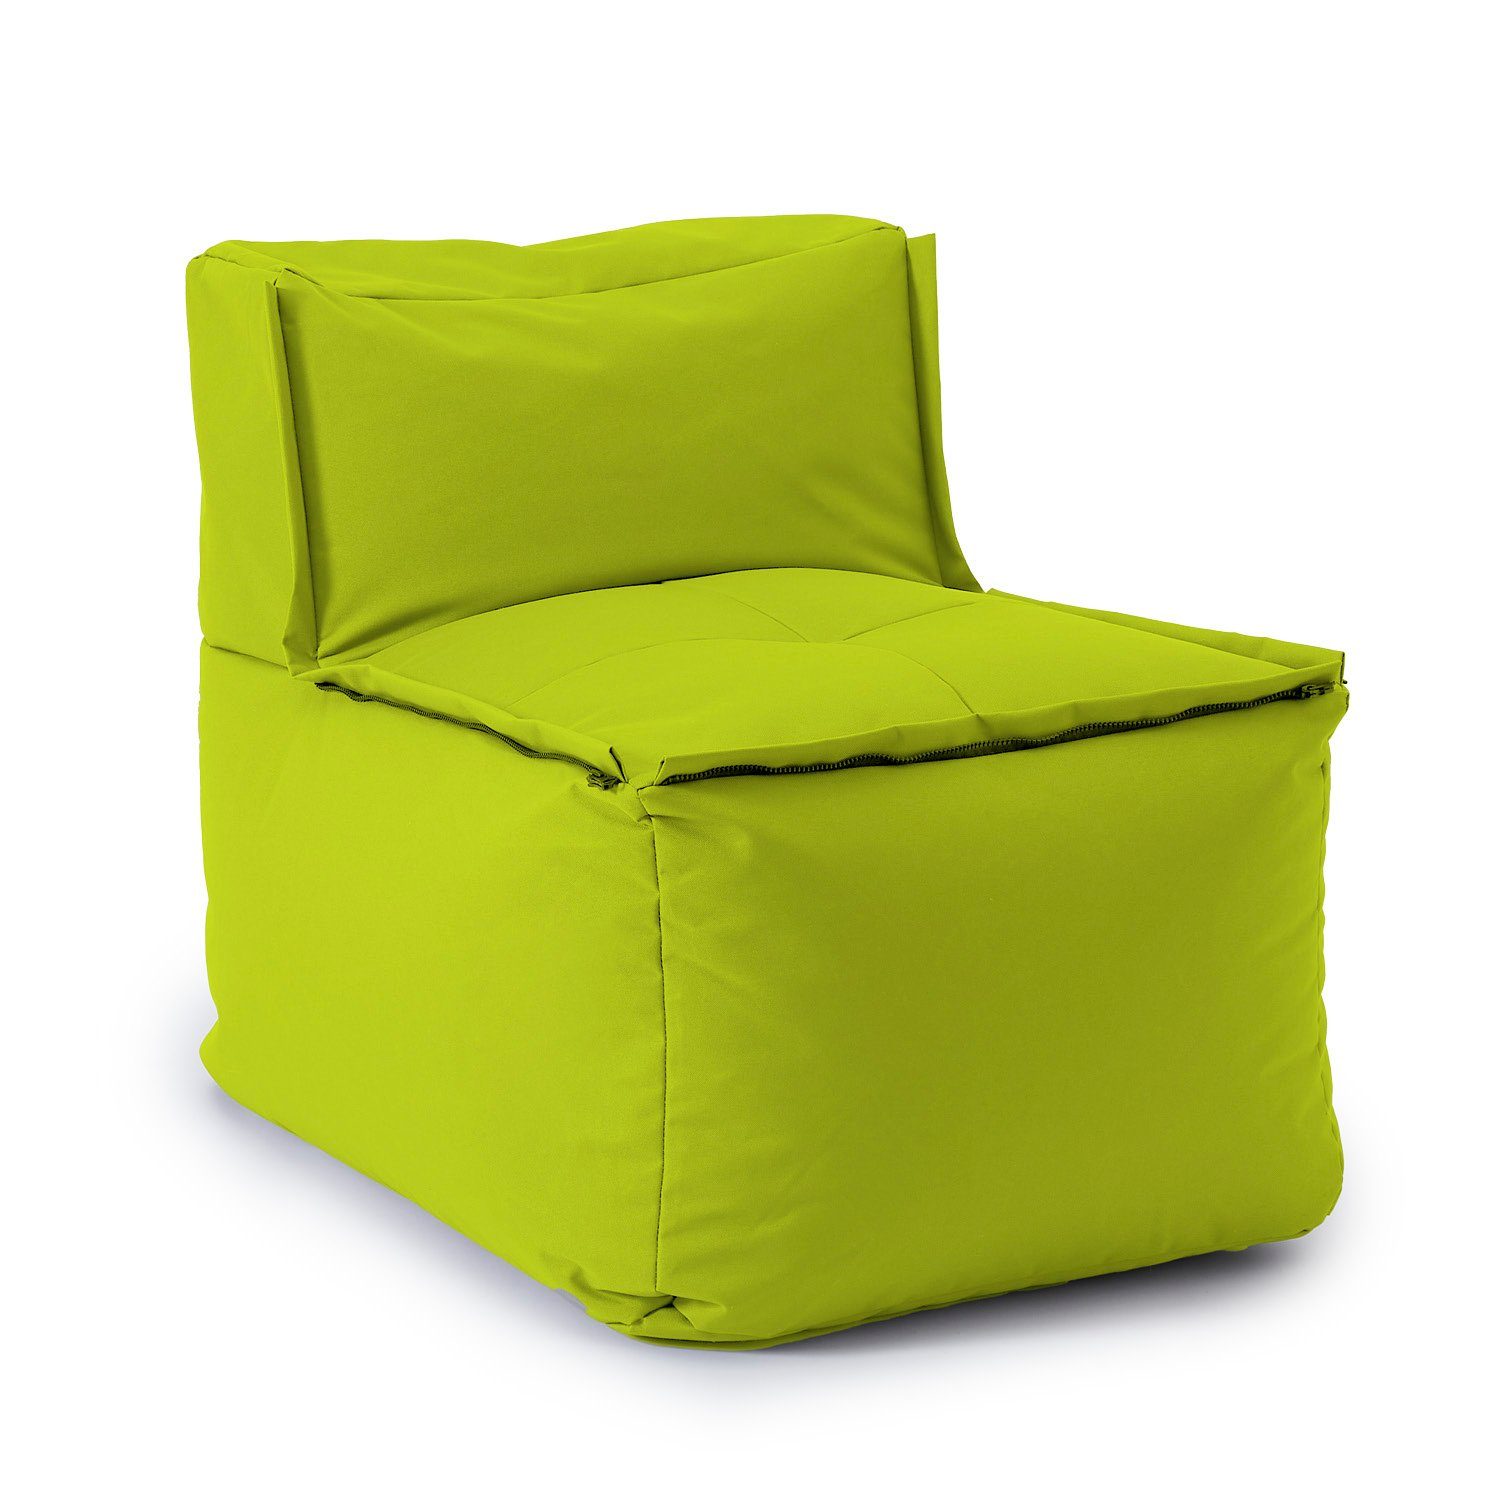 Lumaland Loungeset In- & outdoor Sofa individuell kombinierbar mit dem Modularen System, Sessel wasserfest abnehmbarer Bezug erweiterbar waschbar